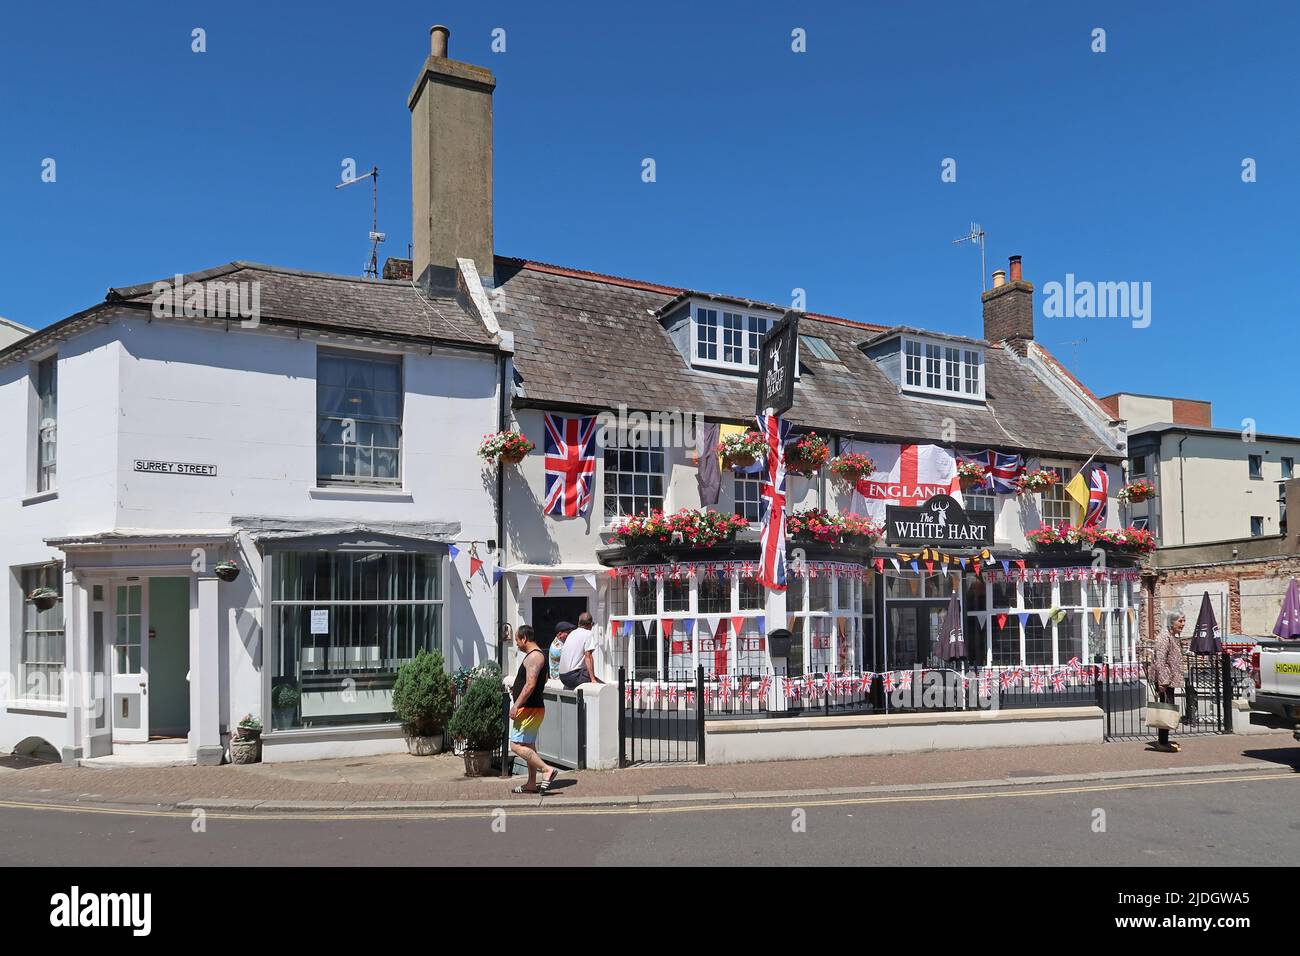 Littlempton, West Sussex, Regno Unito. Il pub White Hart in Surrey Street nella città vecchia. Decorato con bandiere che sostengono la squadra di calcio dell'Inghilterra. Foto Stock